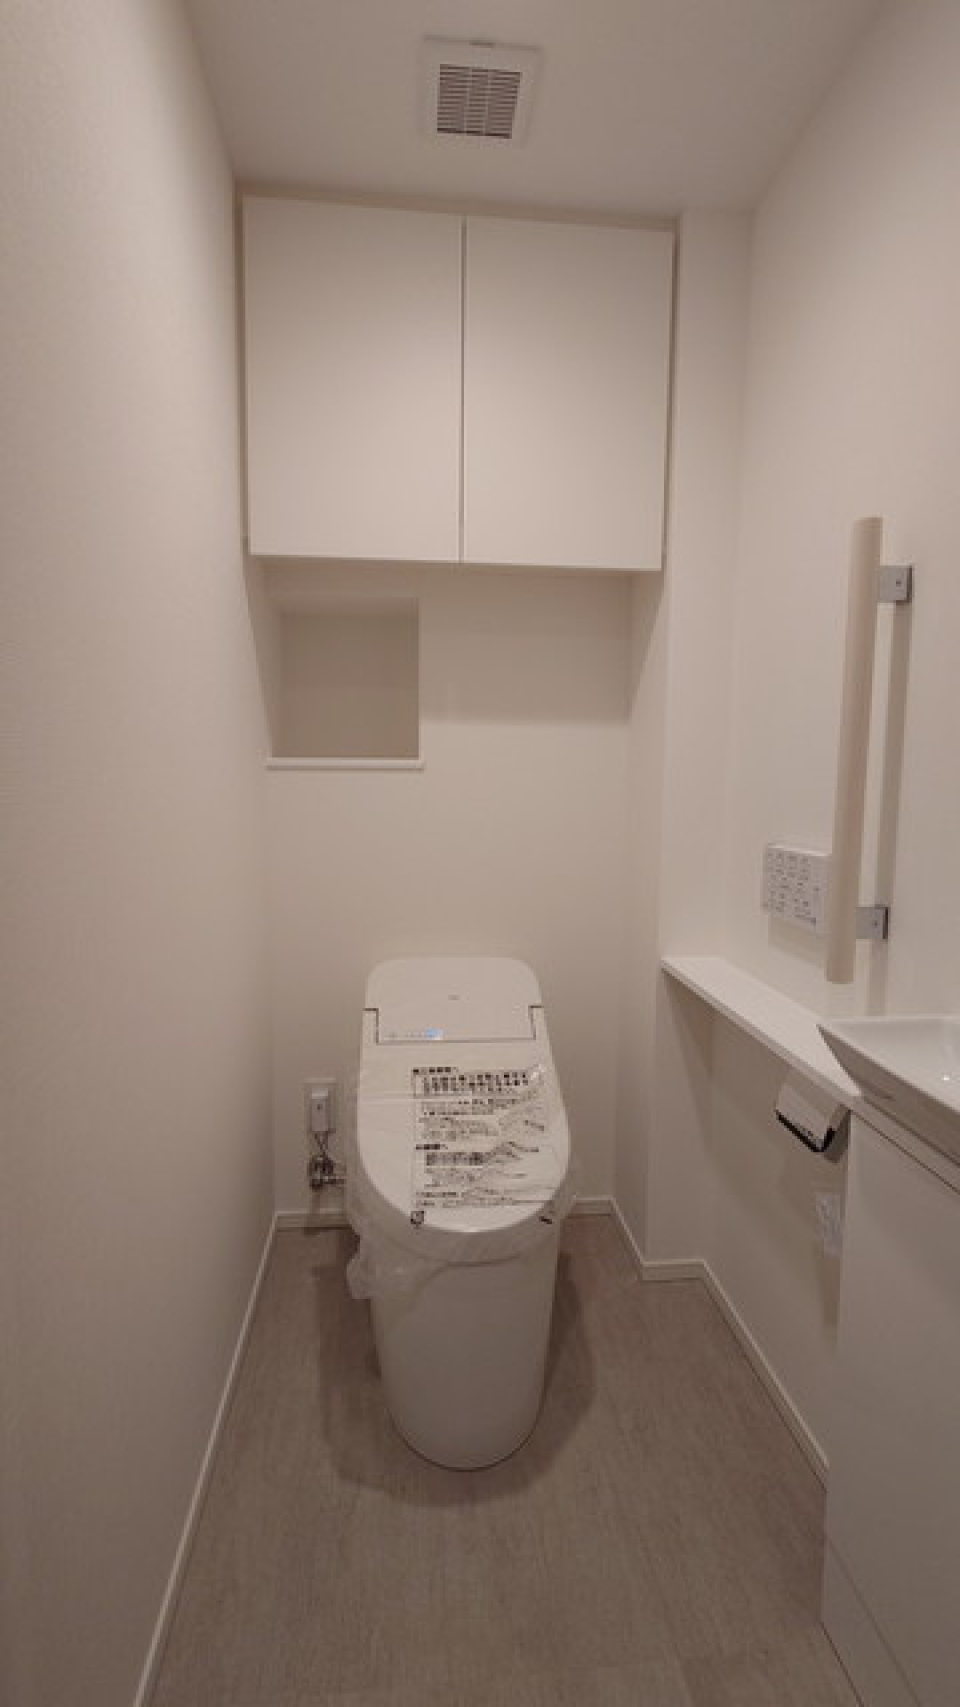 収納棚もしっかりついているトイレは清潔感溢れております。
※写真は同タイプ住戸です。